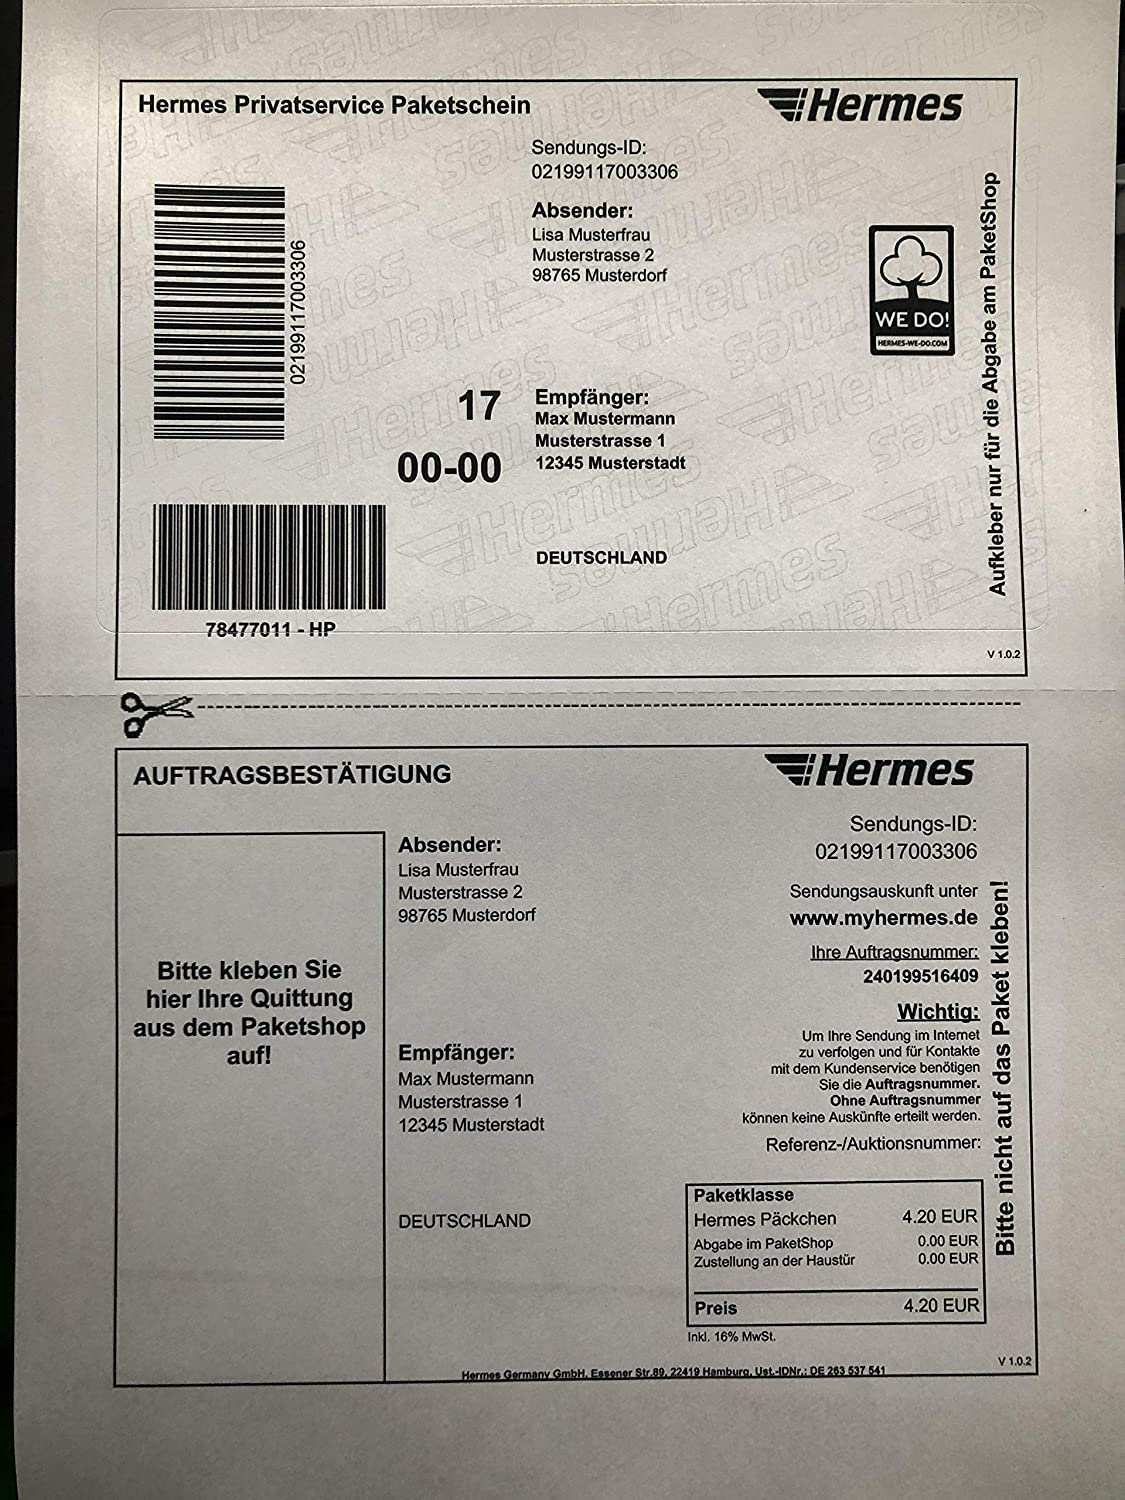 100 Stuck Hermes Etiketten Versandetiketten Fur Online Paketschein Selbstklebend Amazon De Burobedarf Schreibwaren